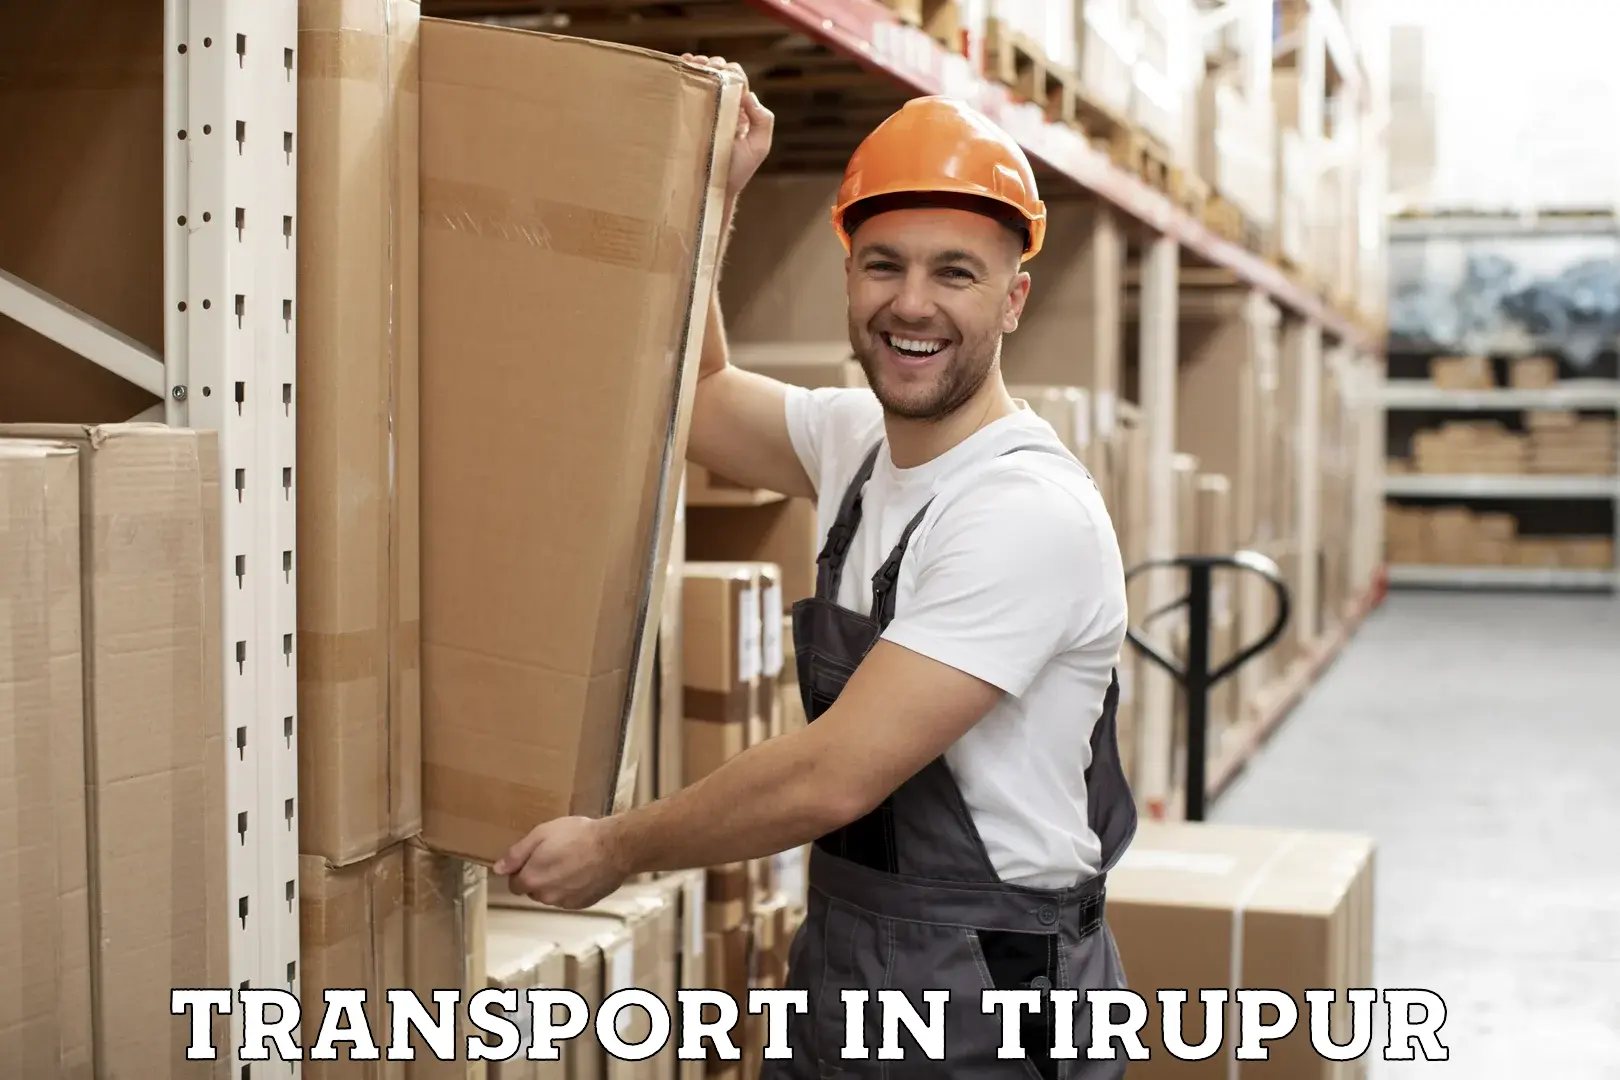 Furniture transport service in Tirupur